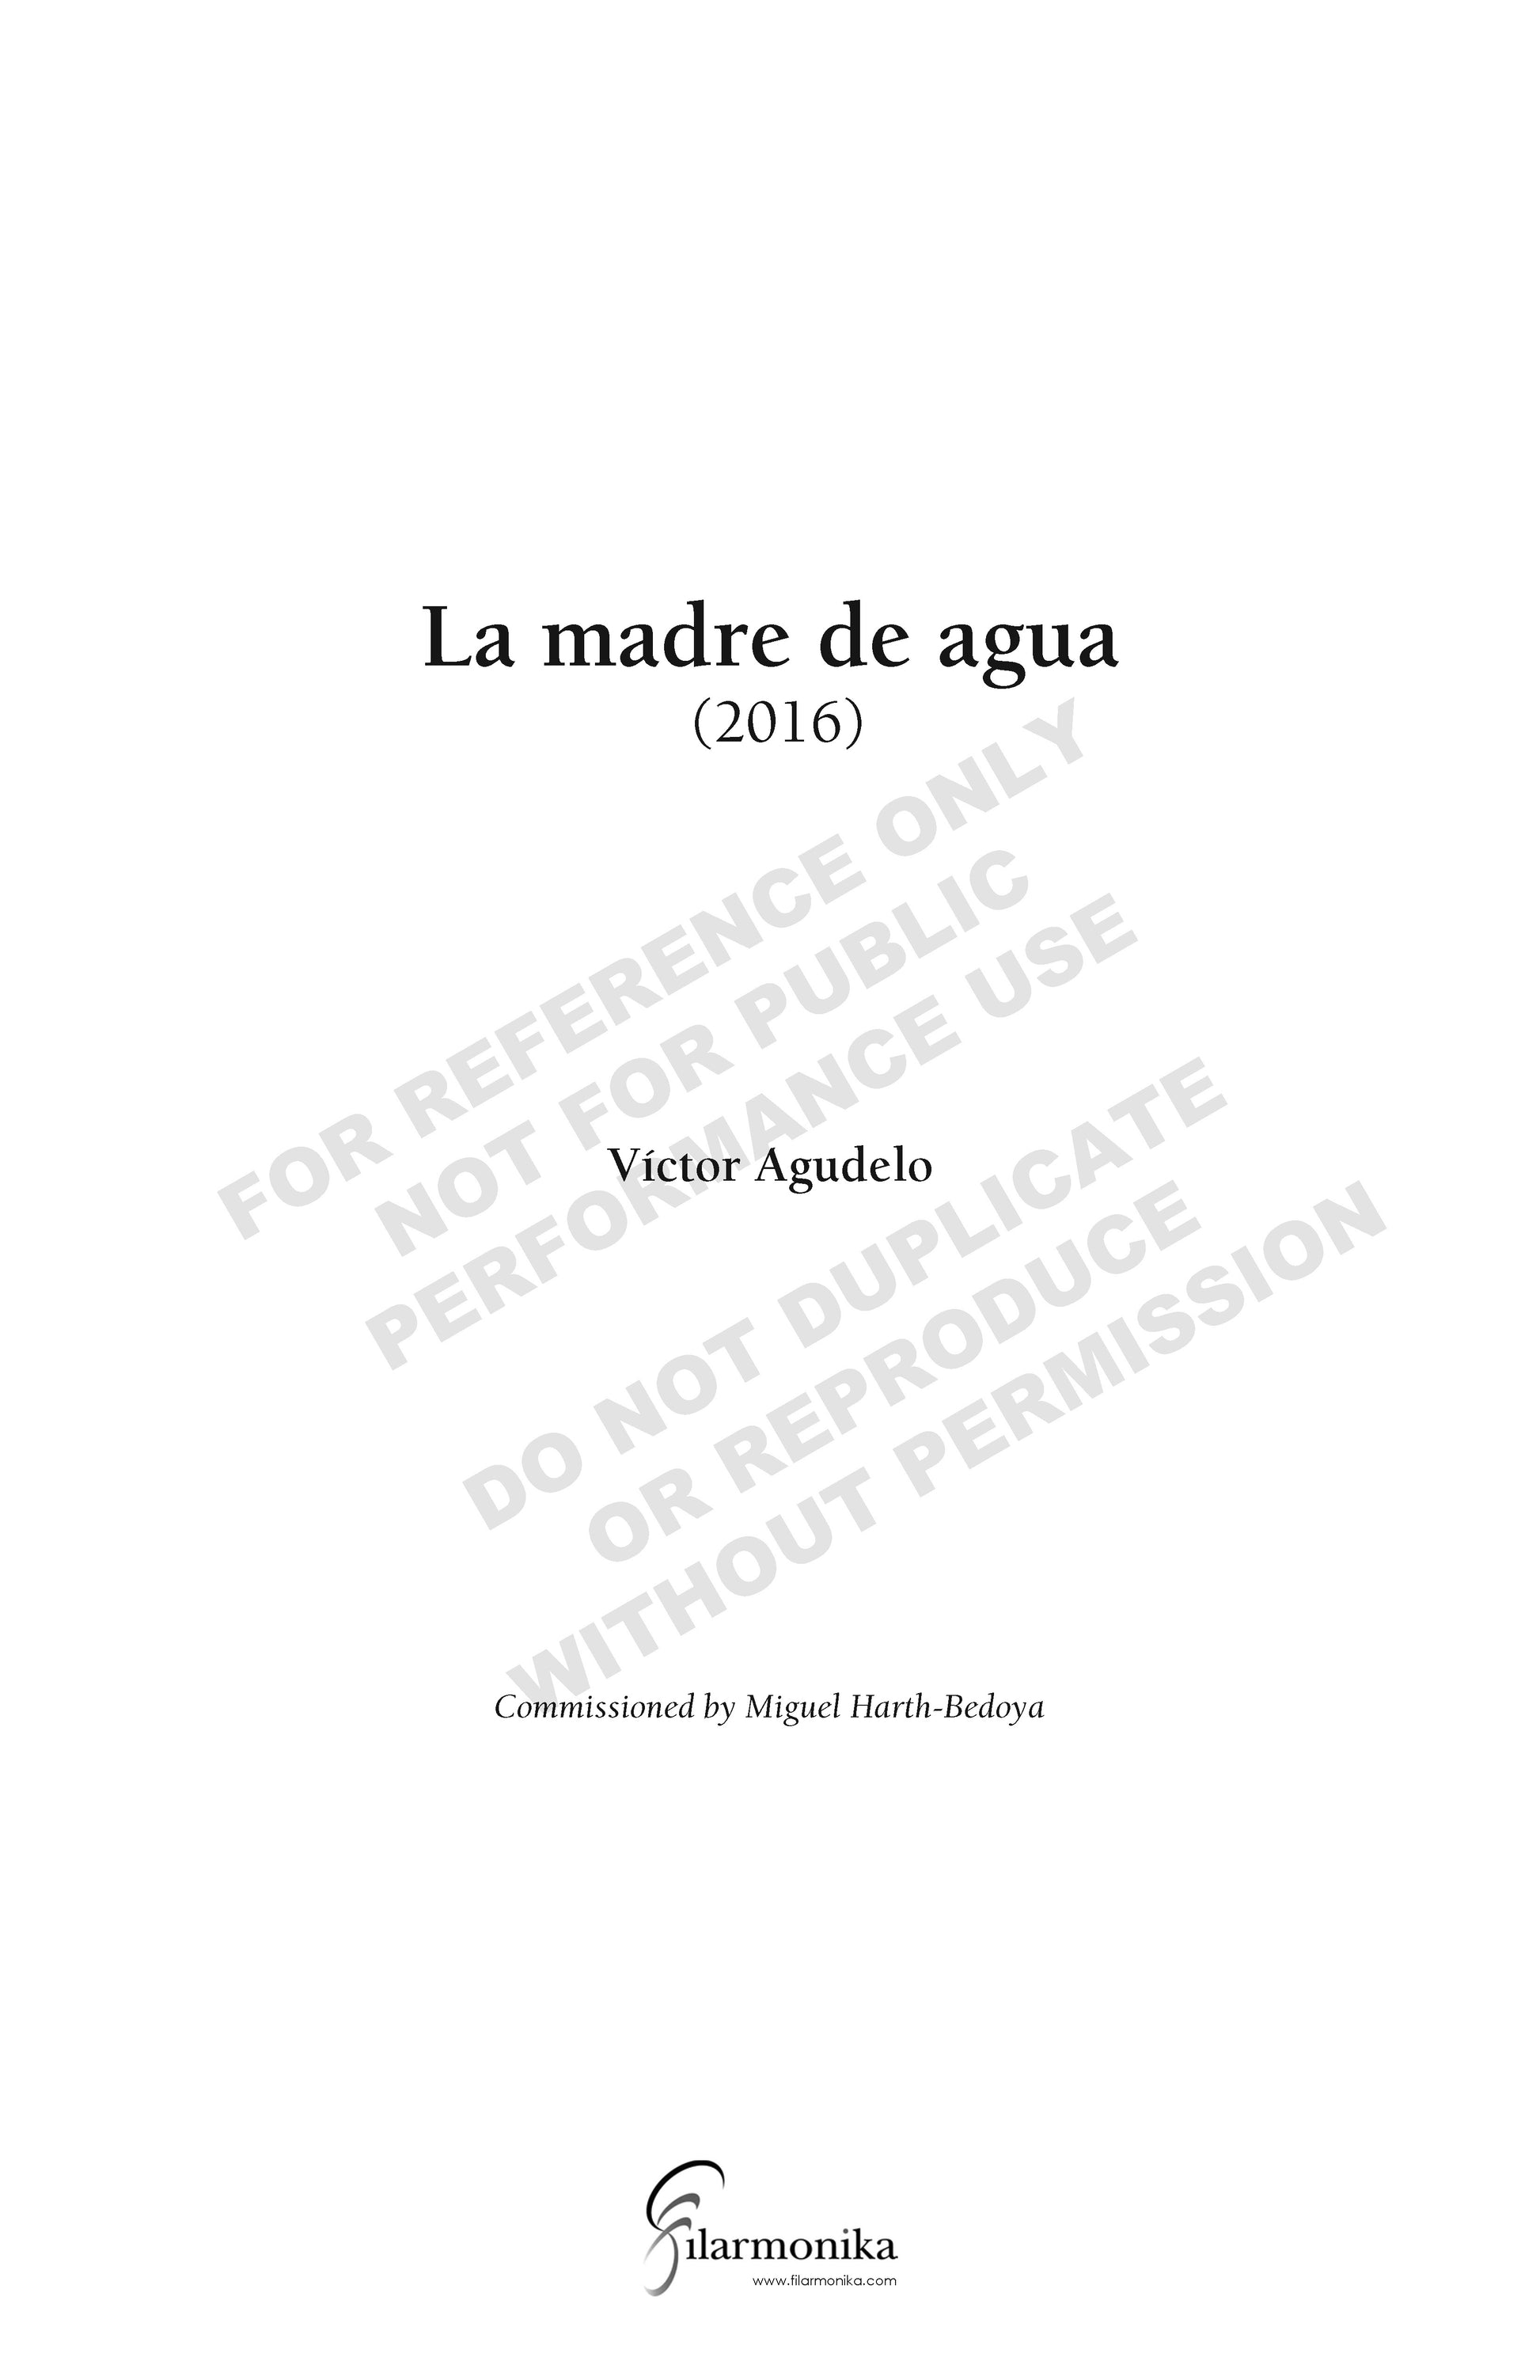 La madre de Agua, for orchestra – FILARMONIKA Music Publishing